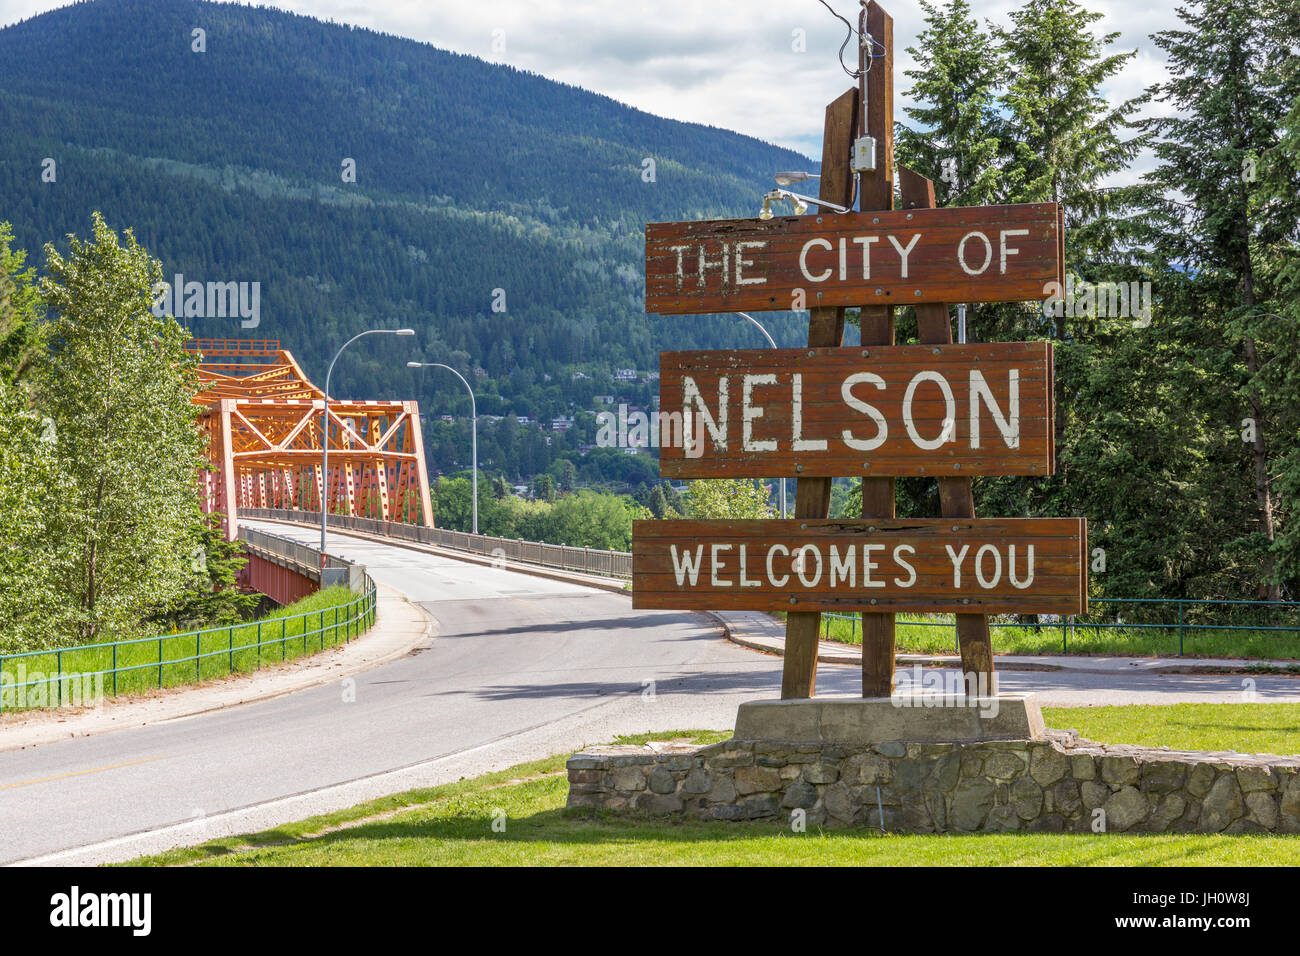 Cartel de bienvenida a la entrada de la ciudad de Nelson, BC, Canadá - con el brazo oeste del puente (Bridge) naranja grande en el fondo Foto de stock